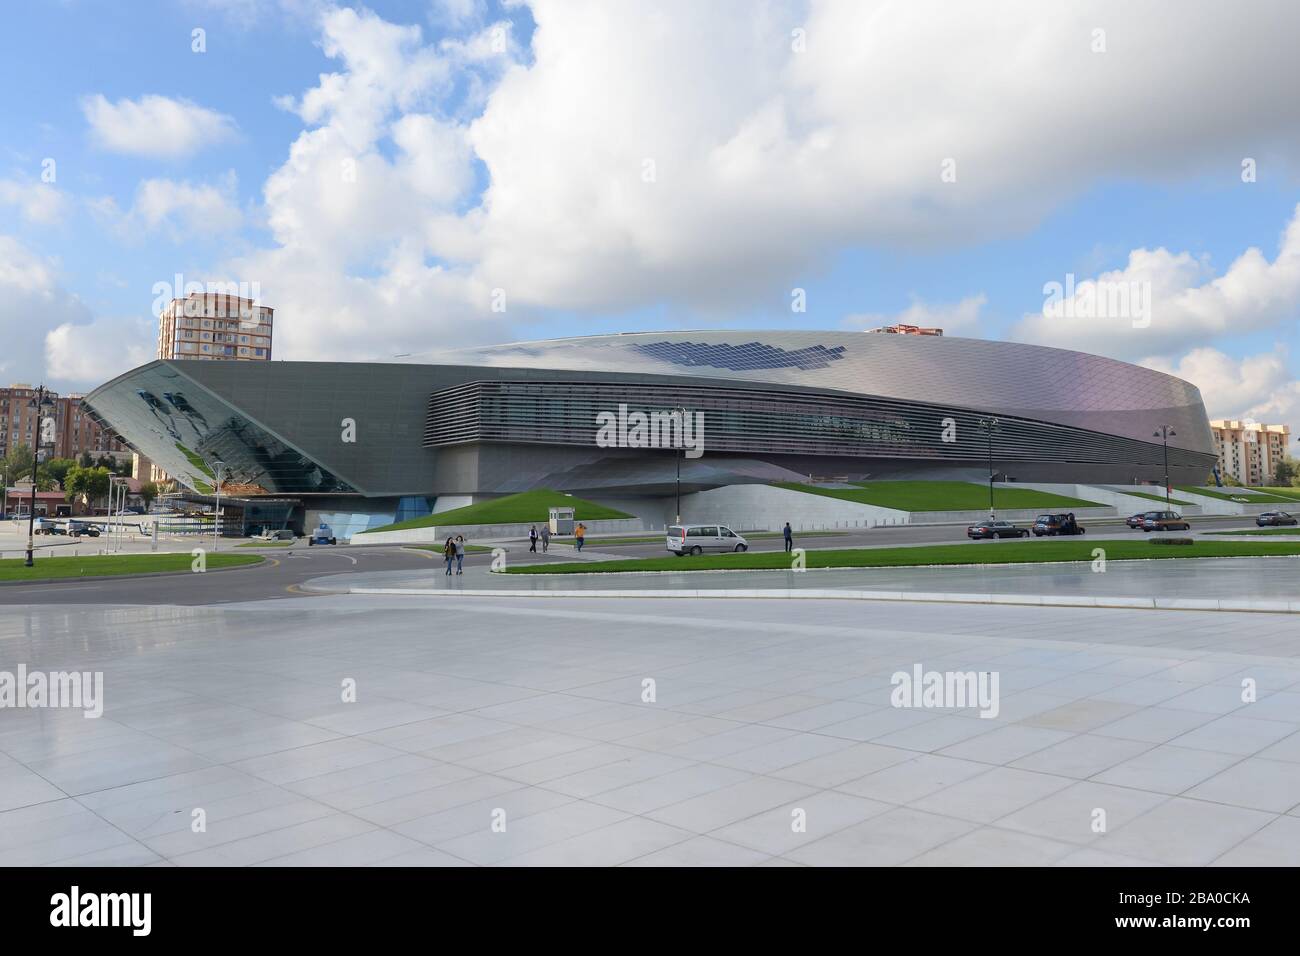 Baku Kongress- und Kongresszentrum in Baku, Aserbaidschan. Moderne und geschwungene Bauweise in einem Land des Kaukasus. Stockfoto